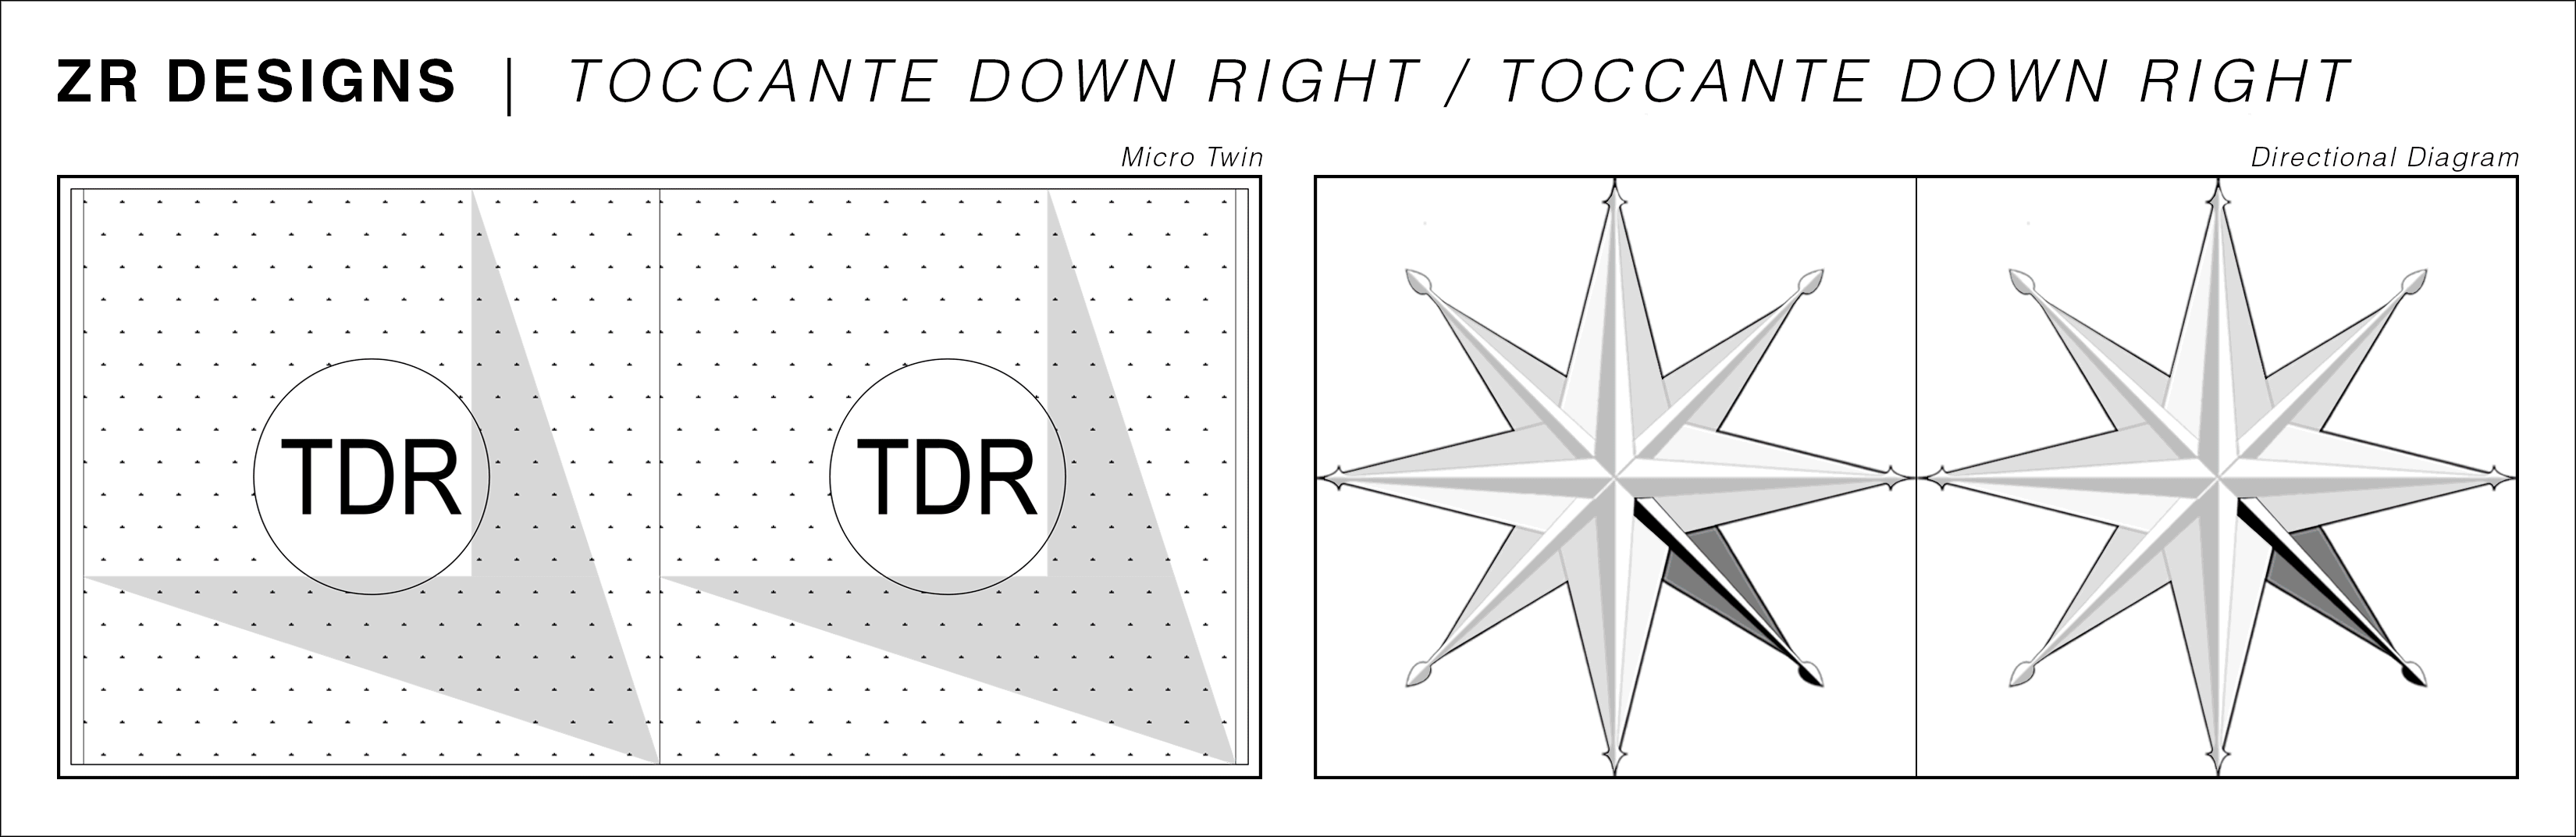 03a-TDRTDR